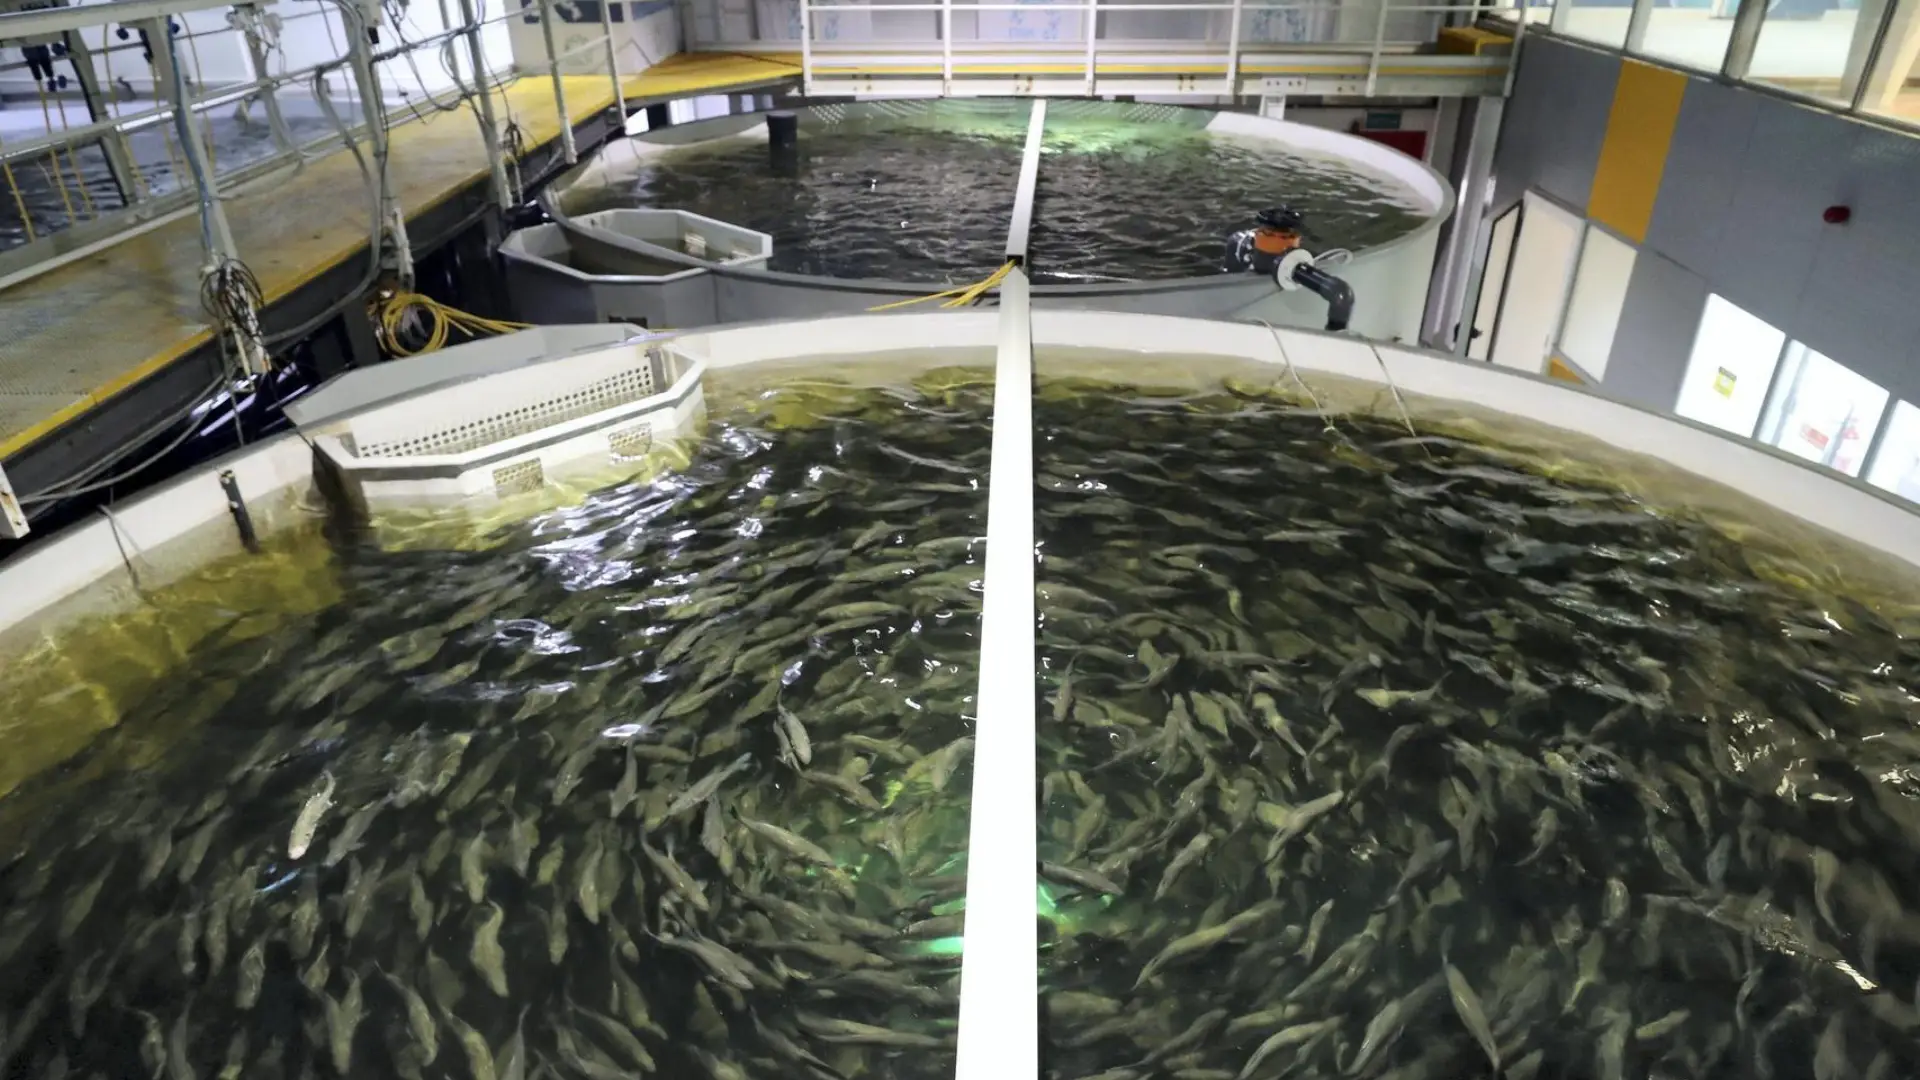 یک تصویر از یک مزرعه پرورش ماهی برای نشان دادن مجوزهای لازم برای احداث پرورش ماهی